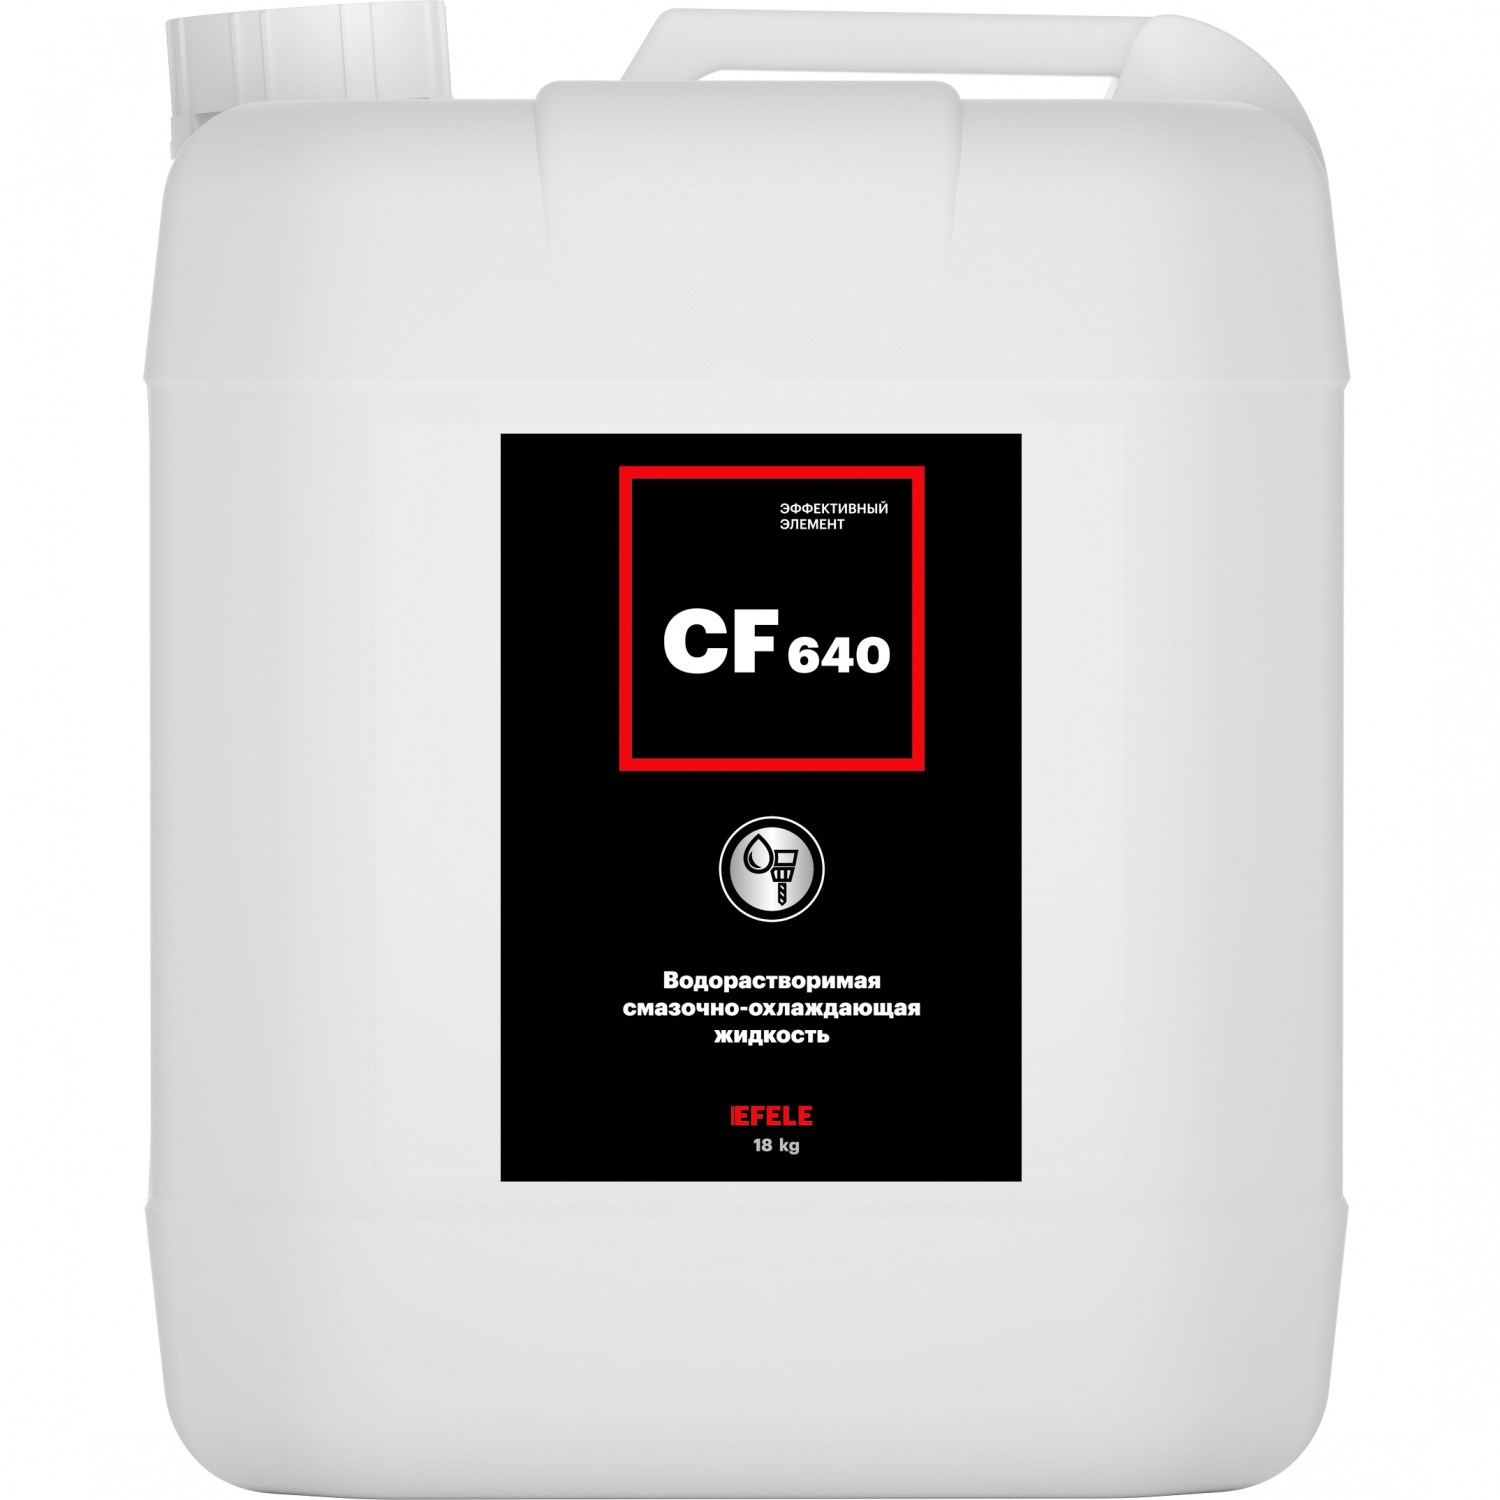 Водосмешиваемая СОЖ с содержанием минерального масла EFELE CF-640 (18 кг) 